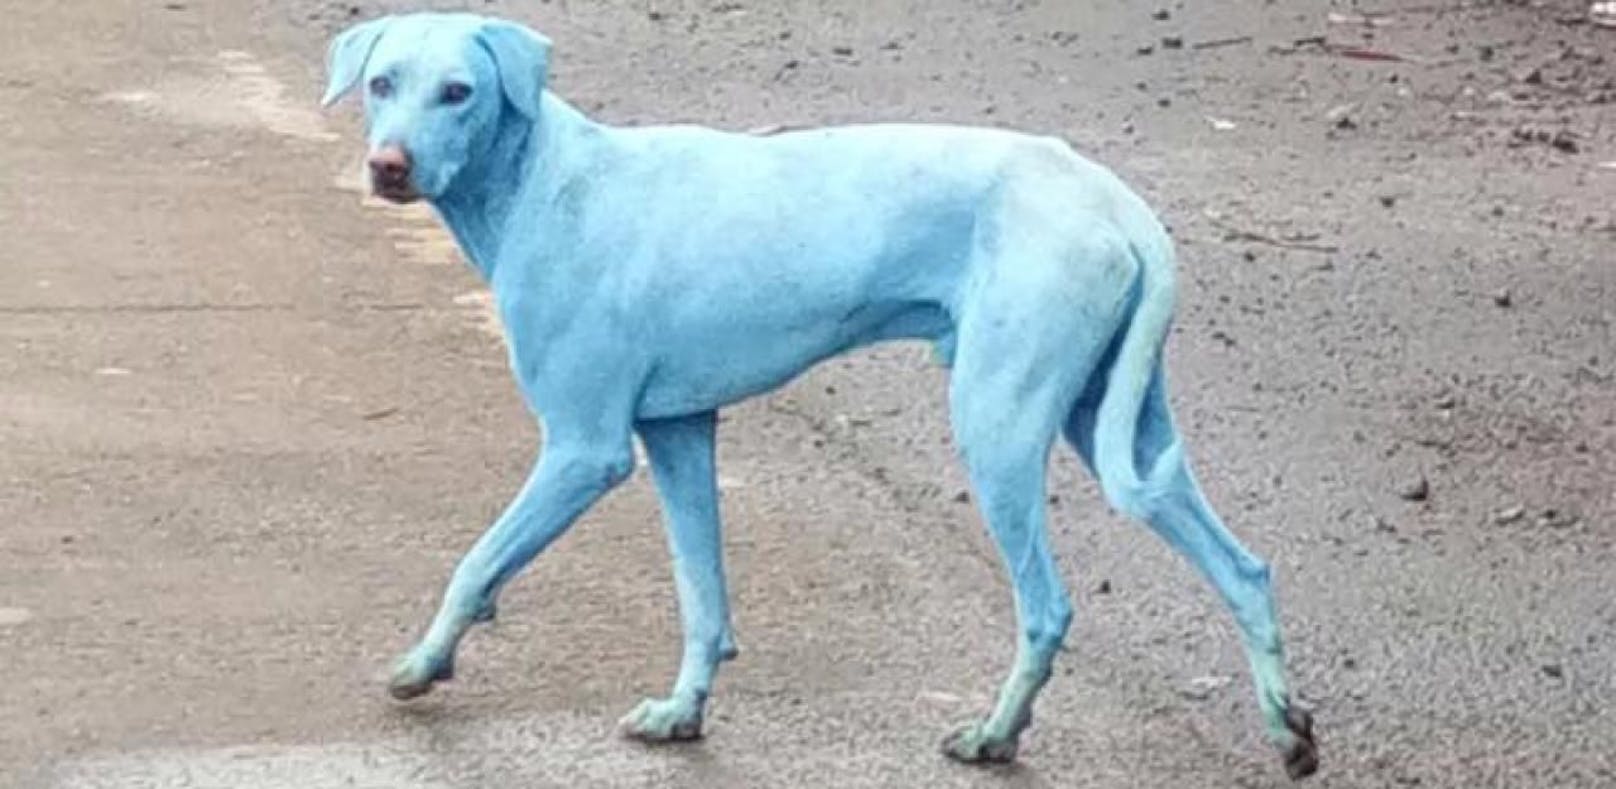 Die blitzblauen und grünen Hunde in Russland gaben der Bevölkerung Rätsel auf. ---&gt; <a href="https://www.heute.at/s/500-kilometer-weiter-blaue-und-gruene-hunde-entdeckt-100128797">ARTIKEL </a><br>